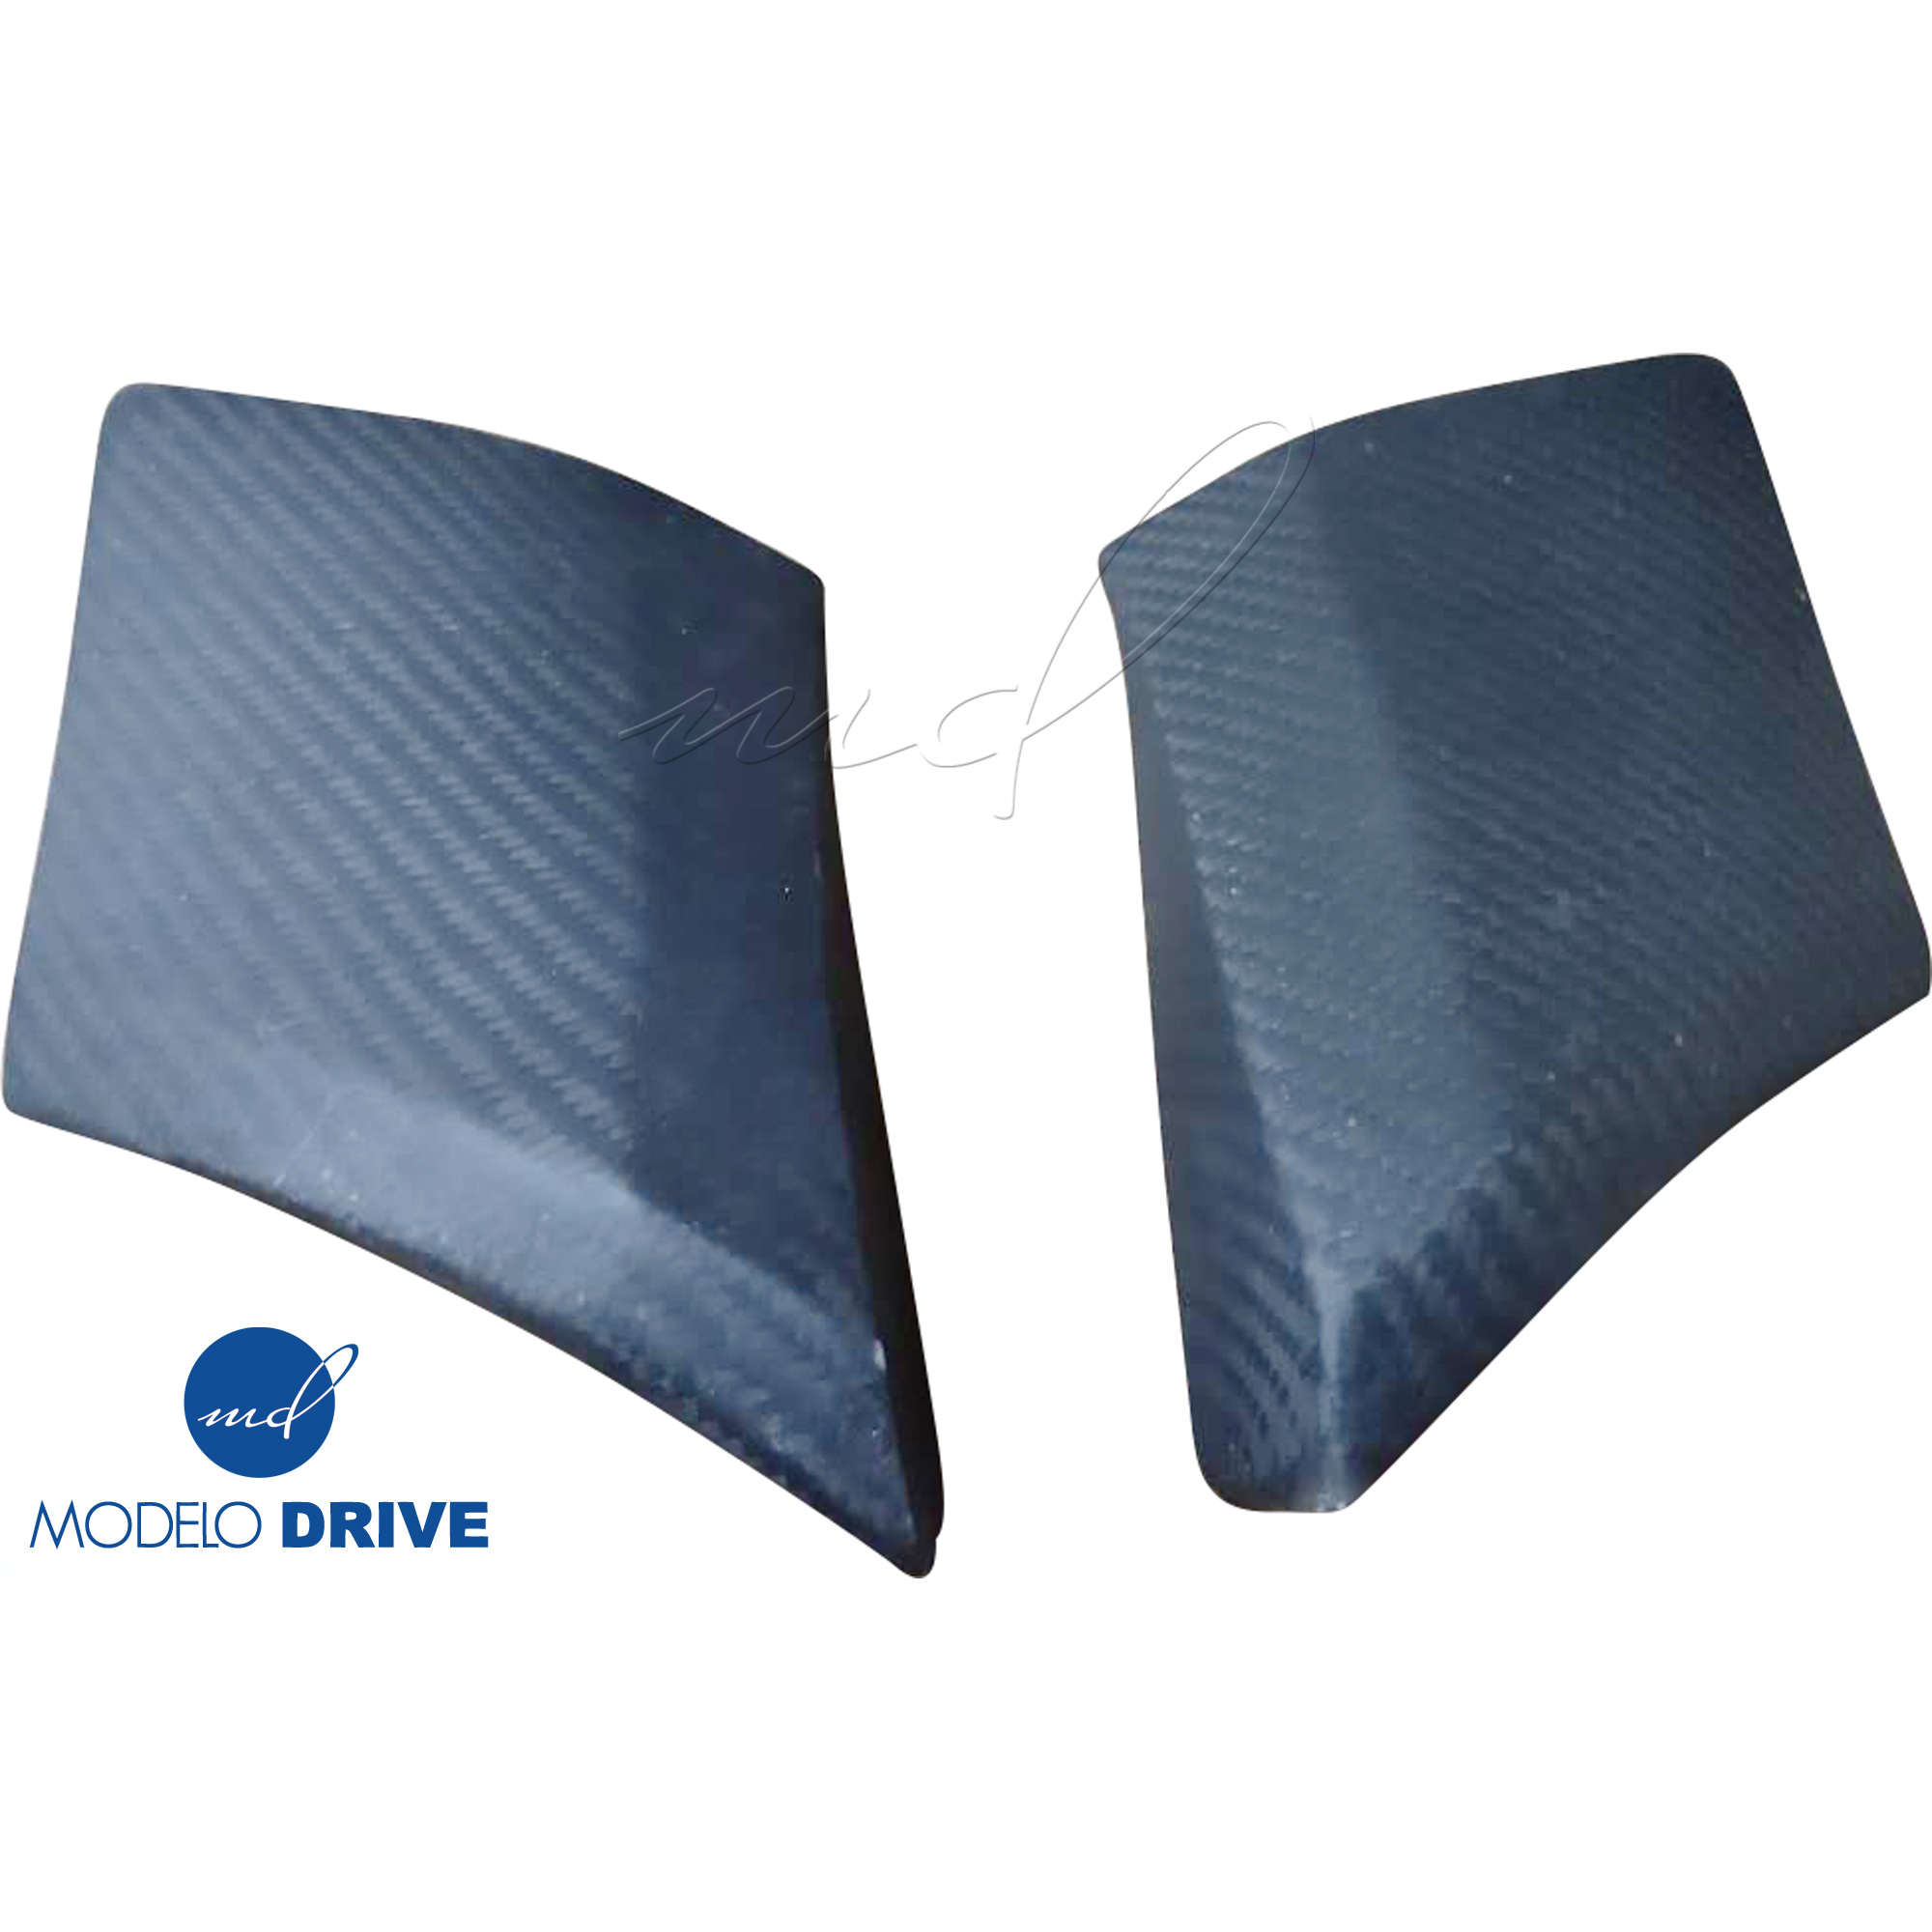 ModeloDrive Carbon Fiber GT3-XL Wide Body Fenders (front) 4pc > Chevrolet Corvette C6 2005-2013 - Image 10